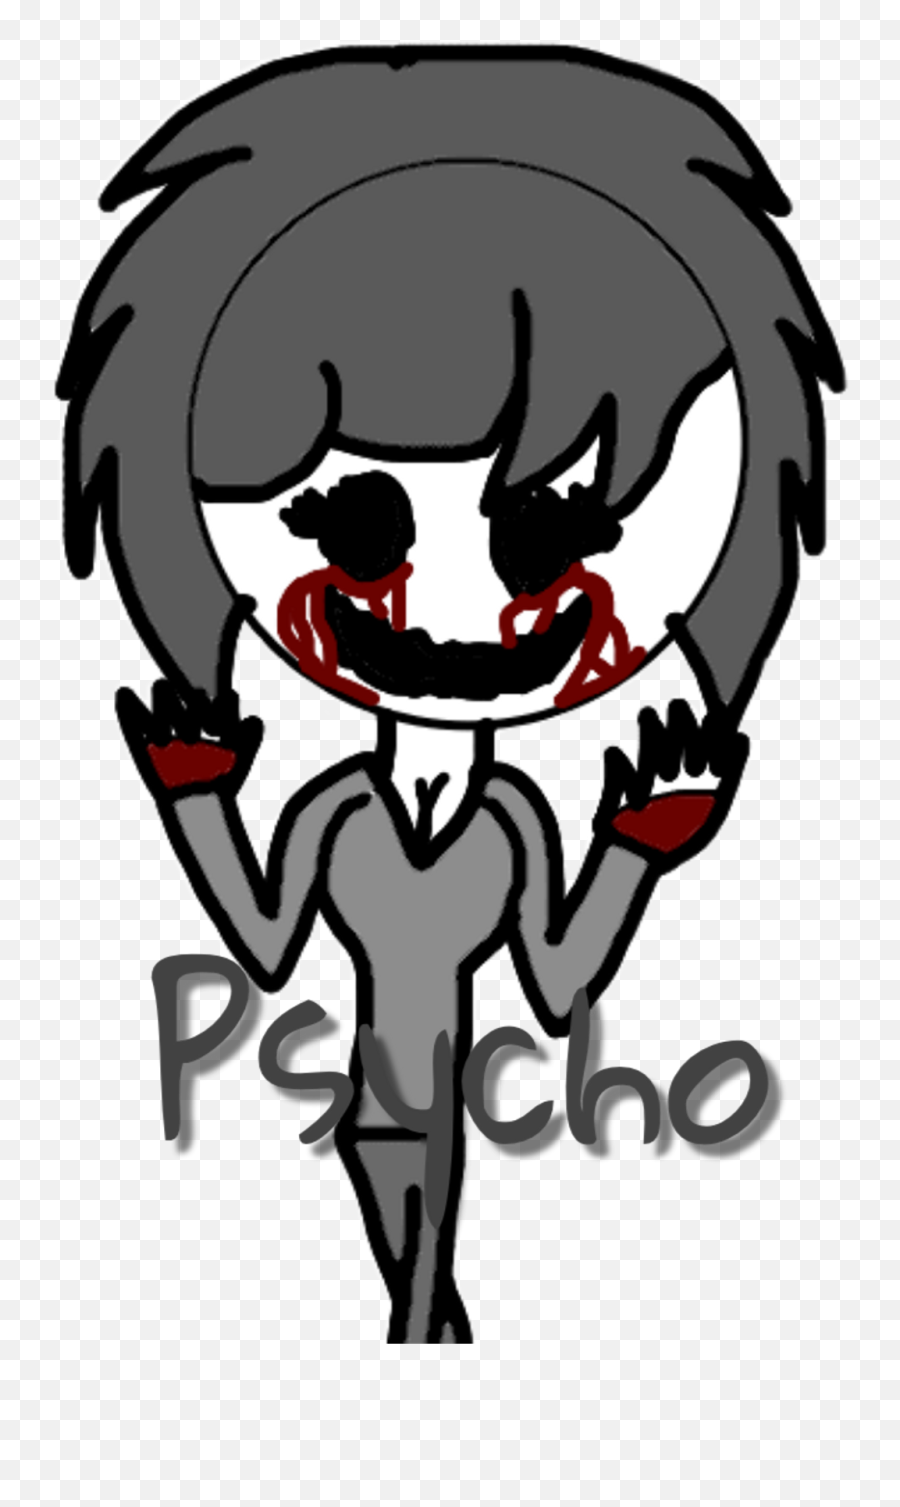 Psycho Sticker Clipart - Sticker Psycho Emoji,Psycho Emoji